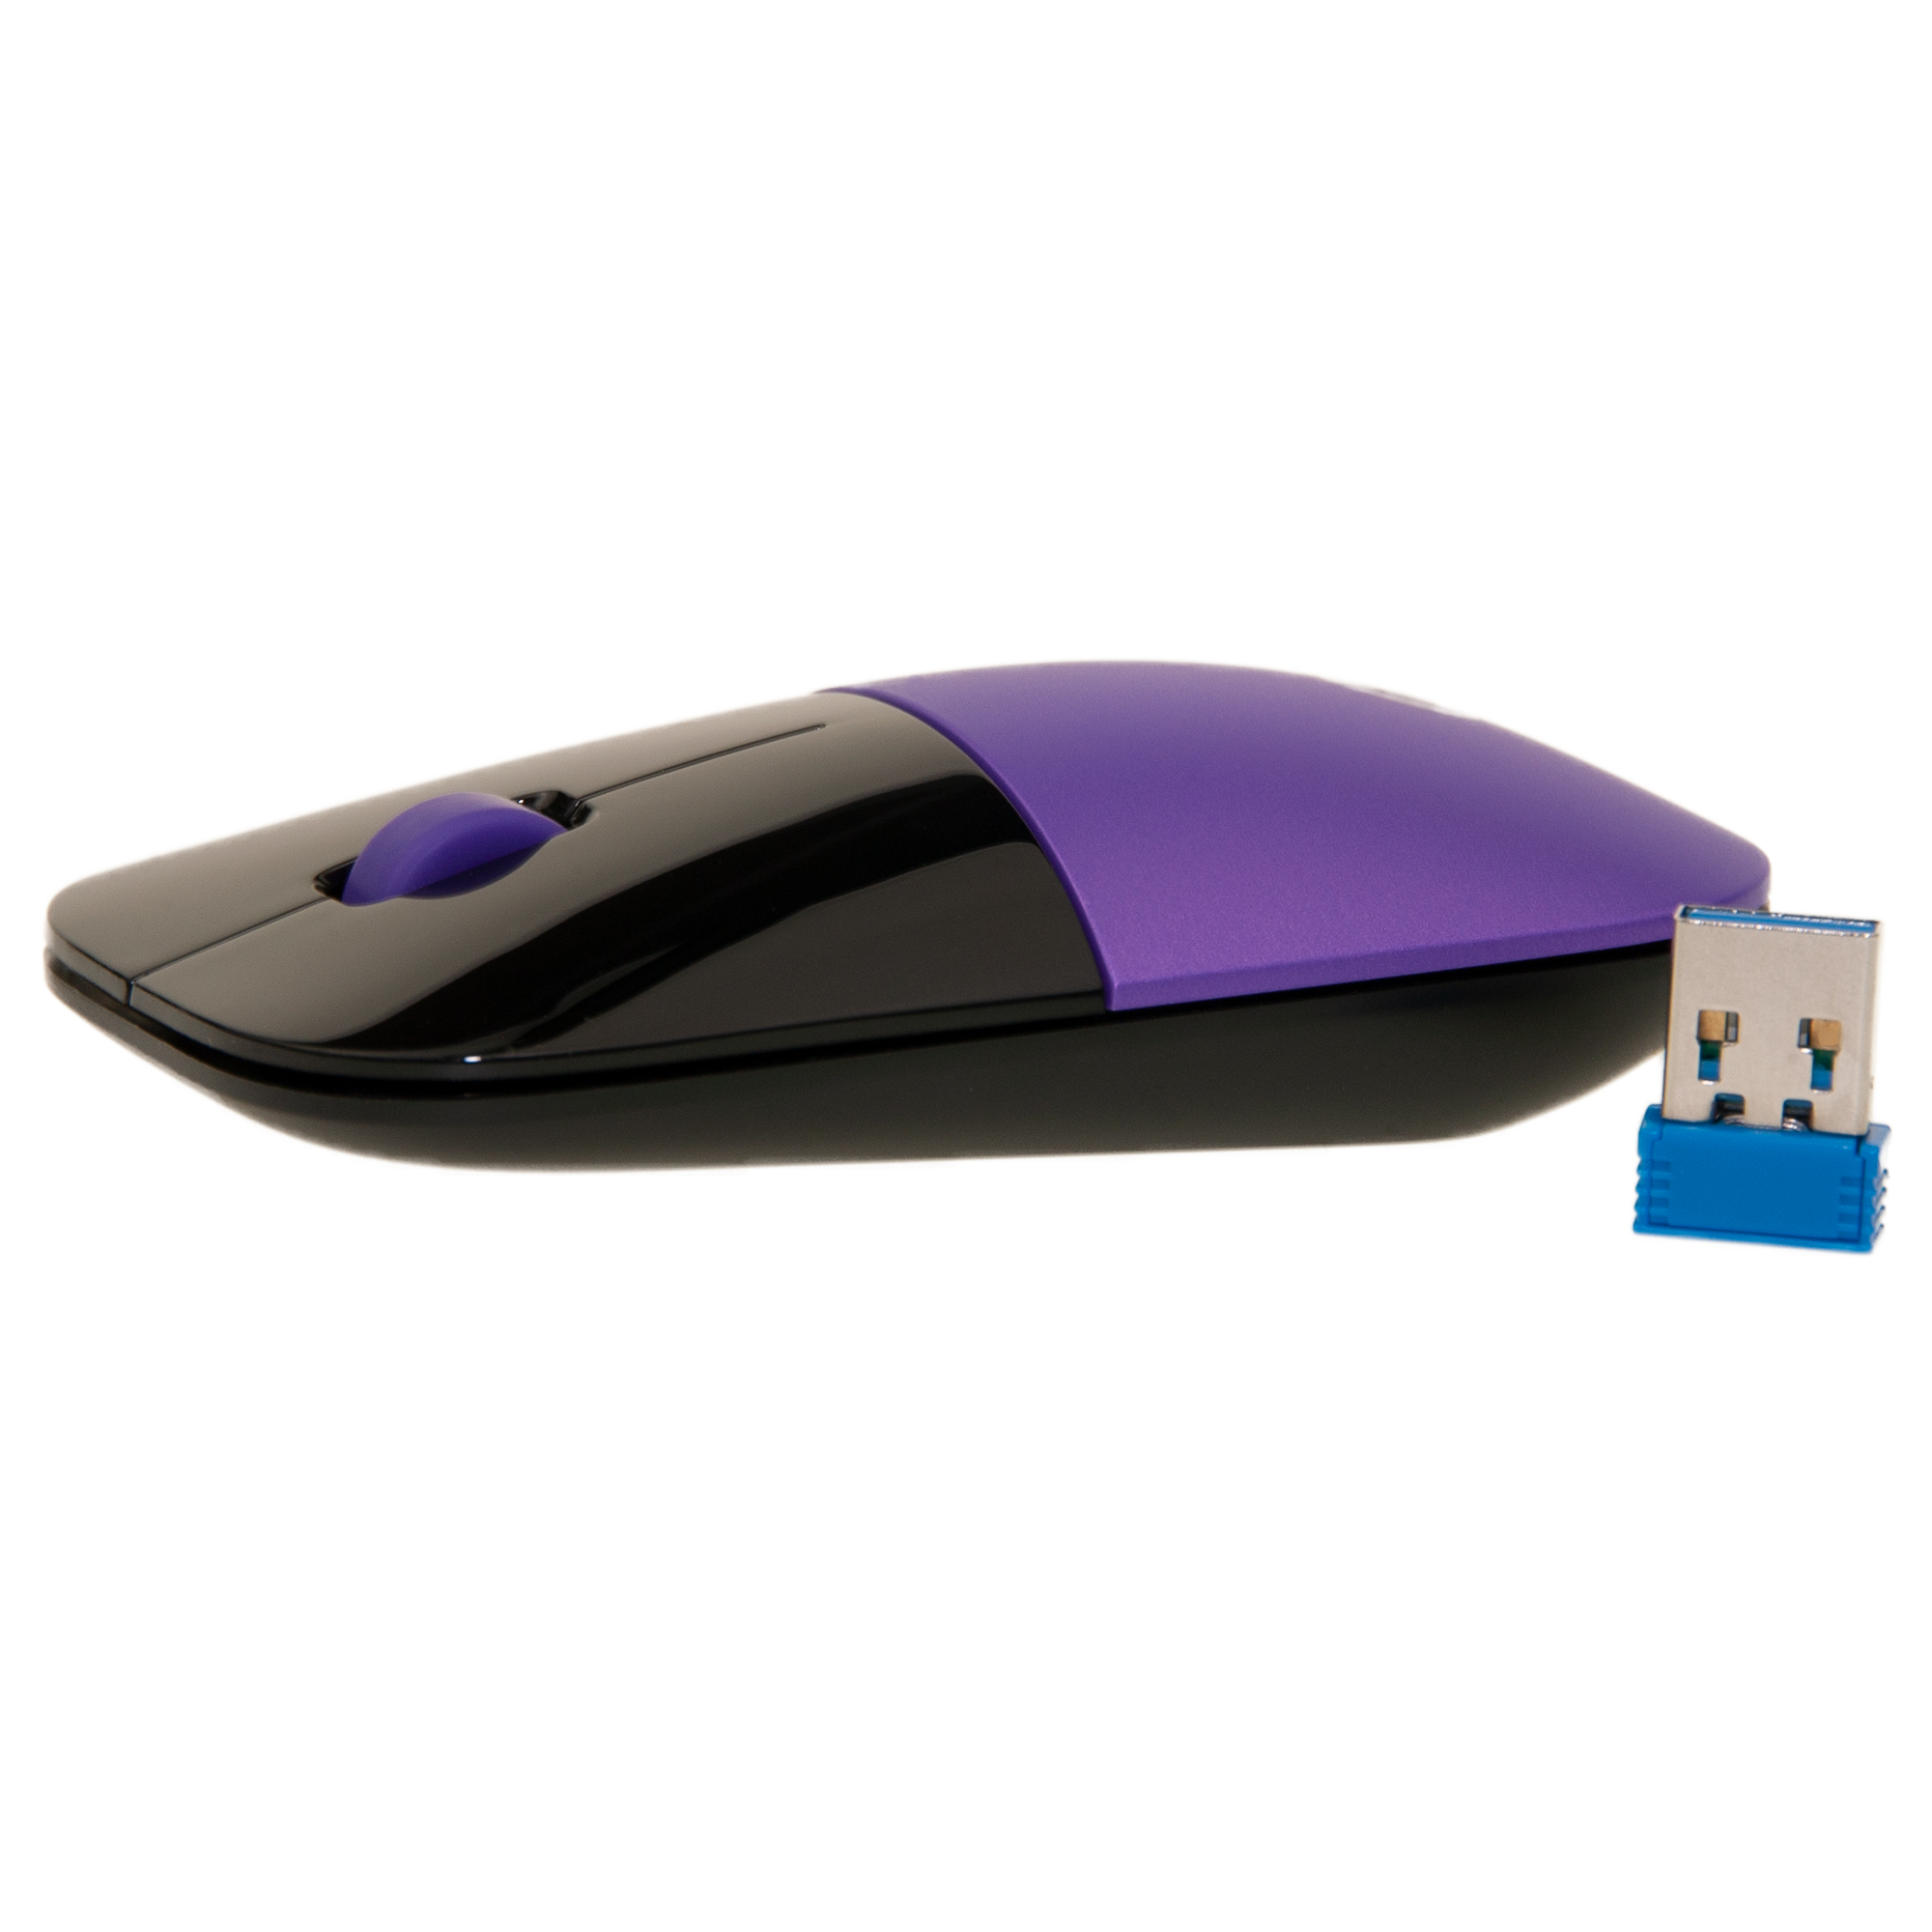 Purple HP Z3700 Wireless Mouse, Low Profile Stylish Sleek